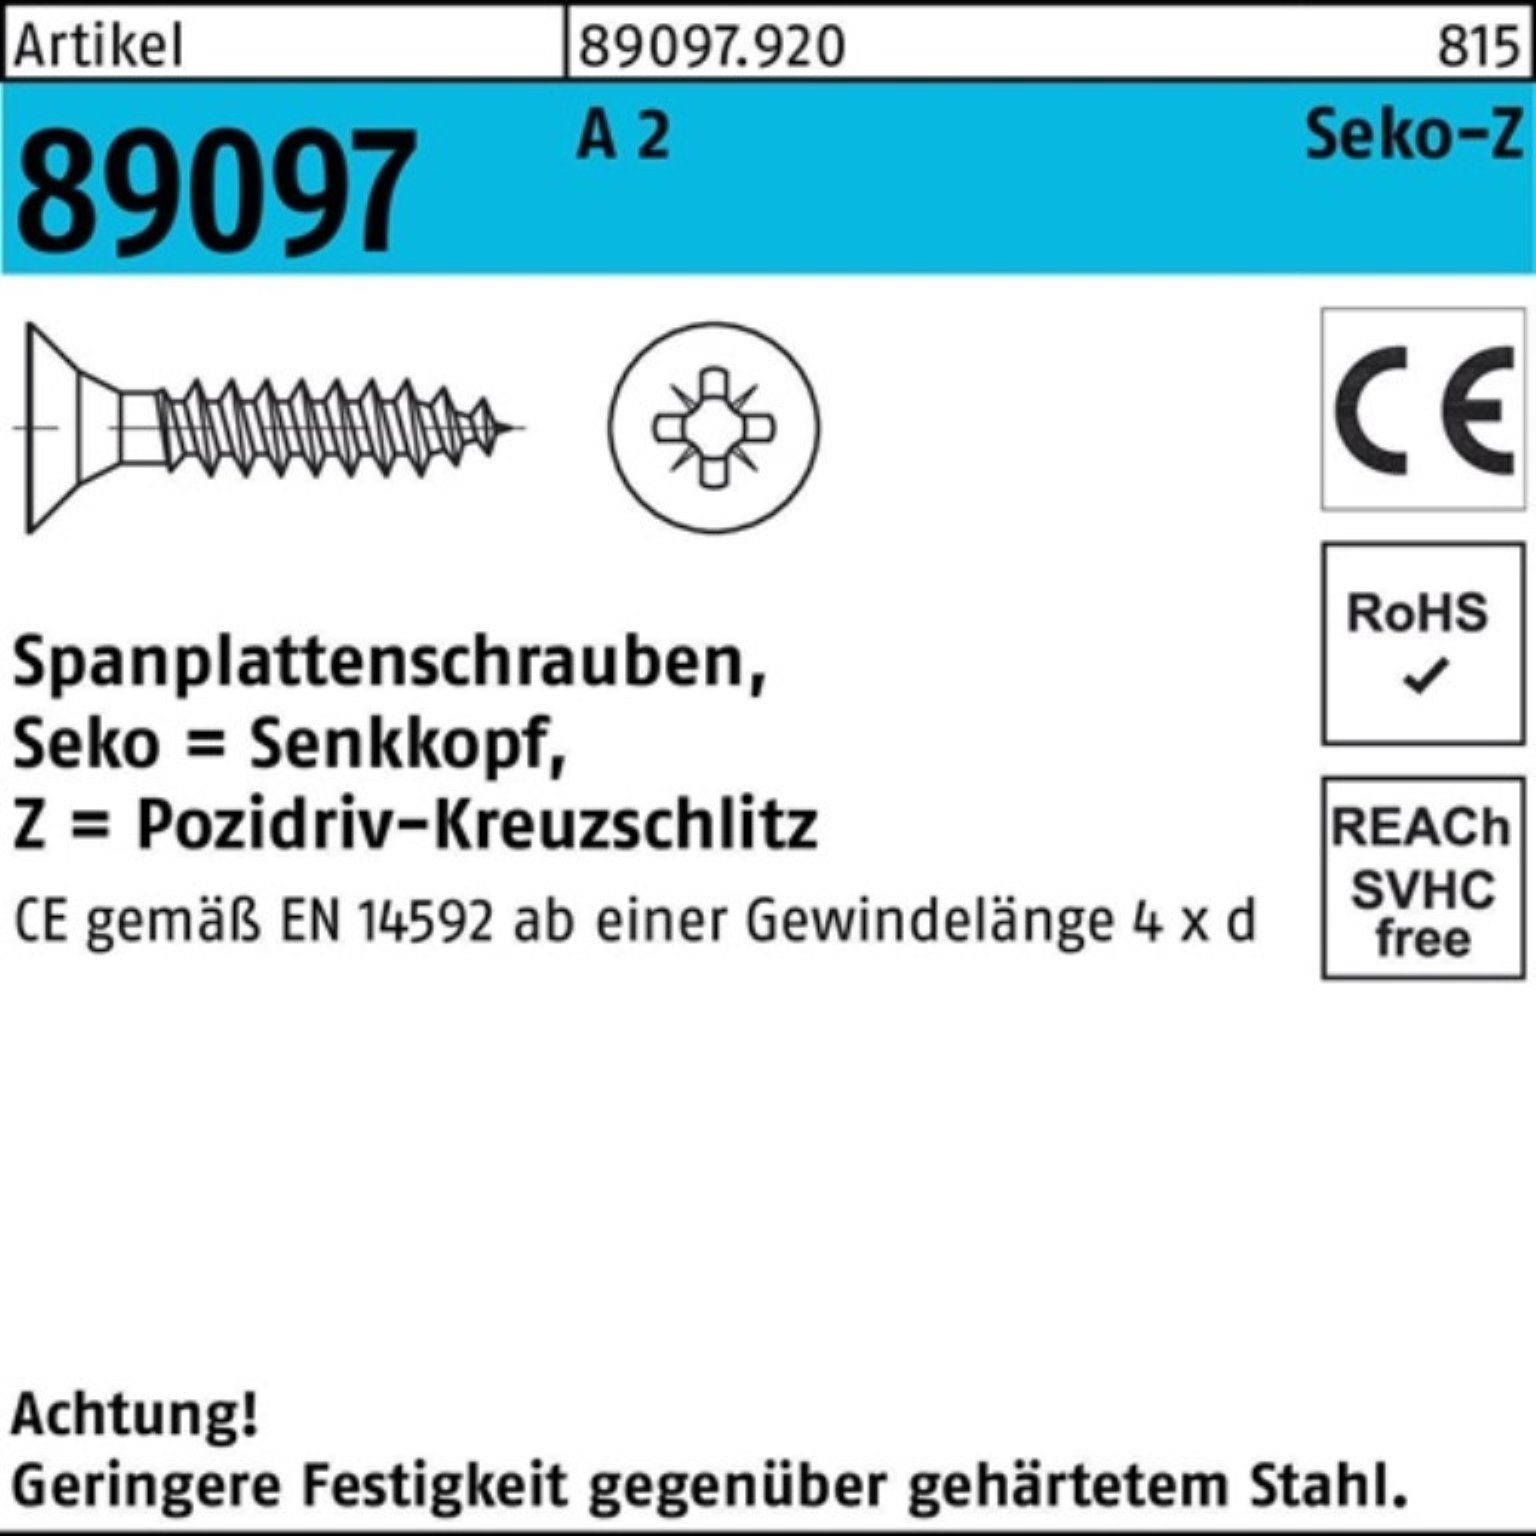 Reyher Spanplattenschraube 200er Pack 89097 20-Z 2 Stü PZ VG 200 3x R SEKO Spanplattenschraube A